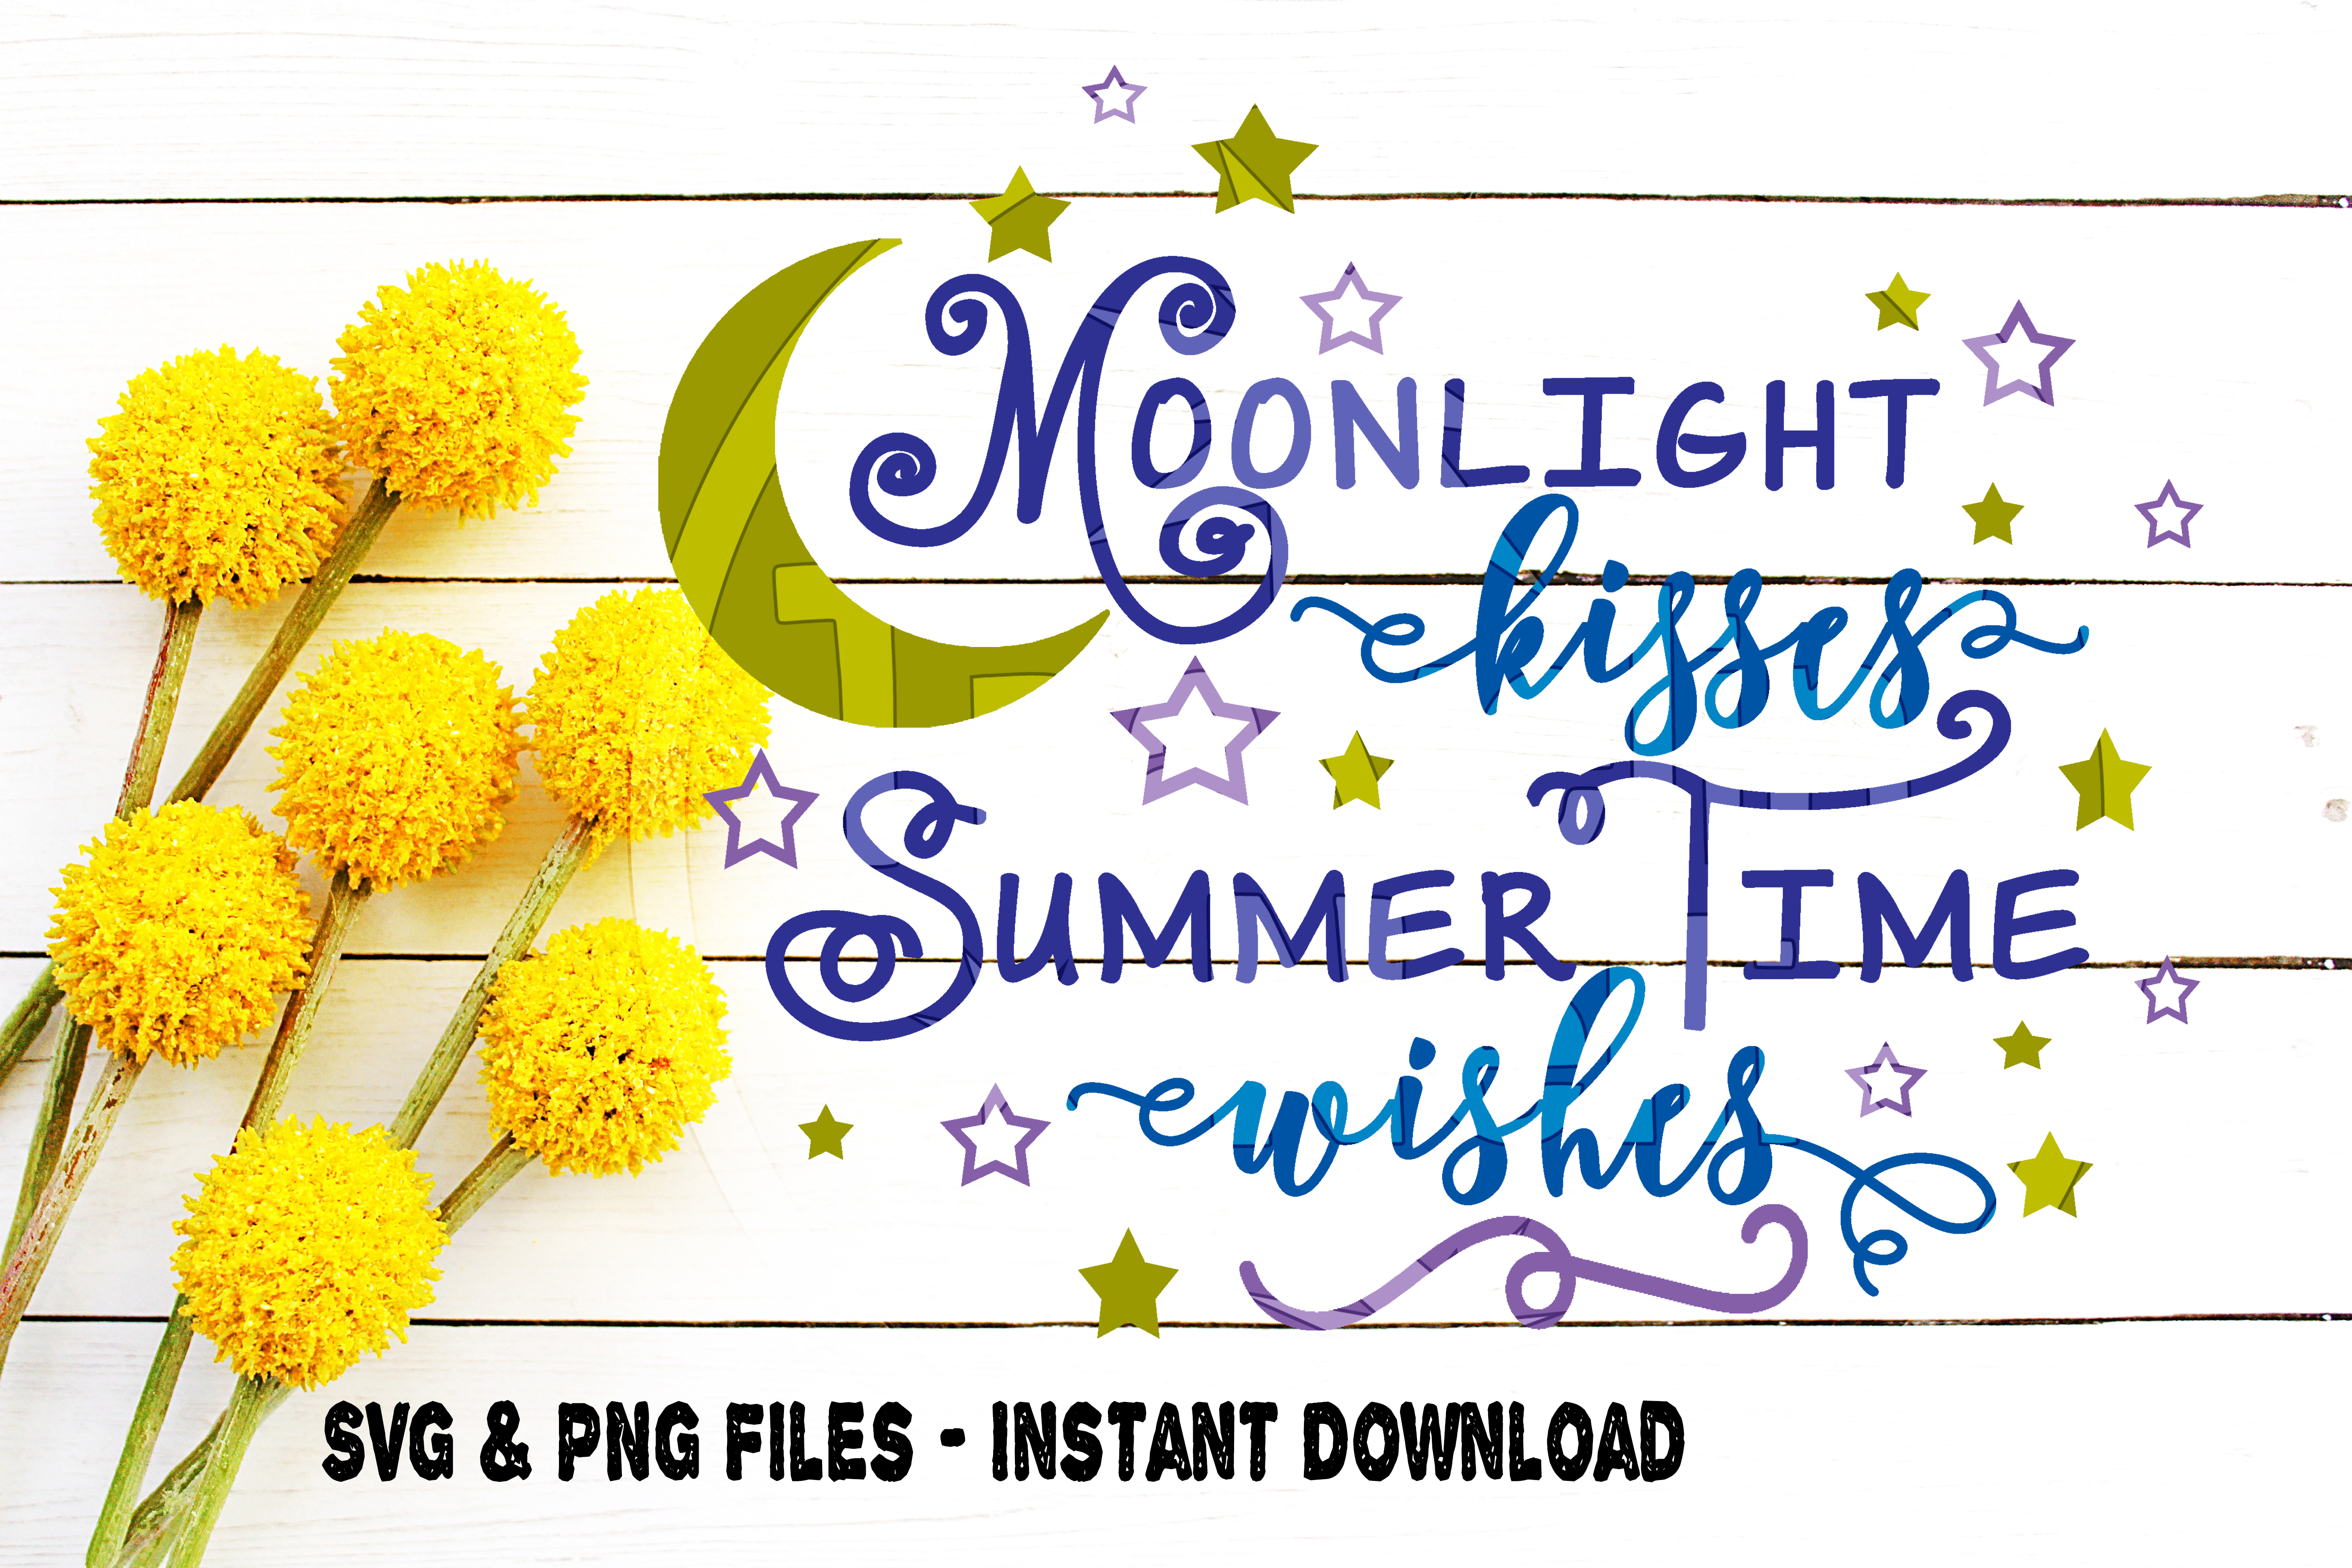 Download Moonlight Kisses Summer Time WIshes SVG Image Design for ...